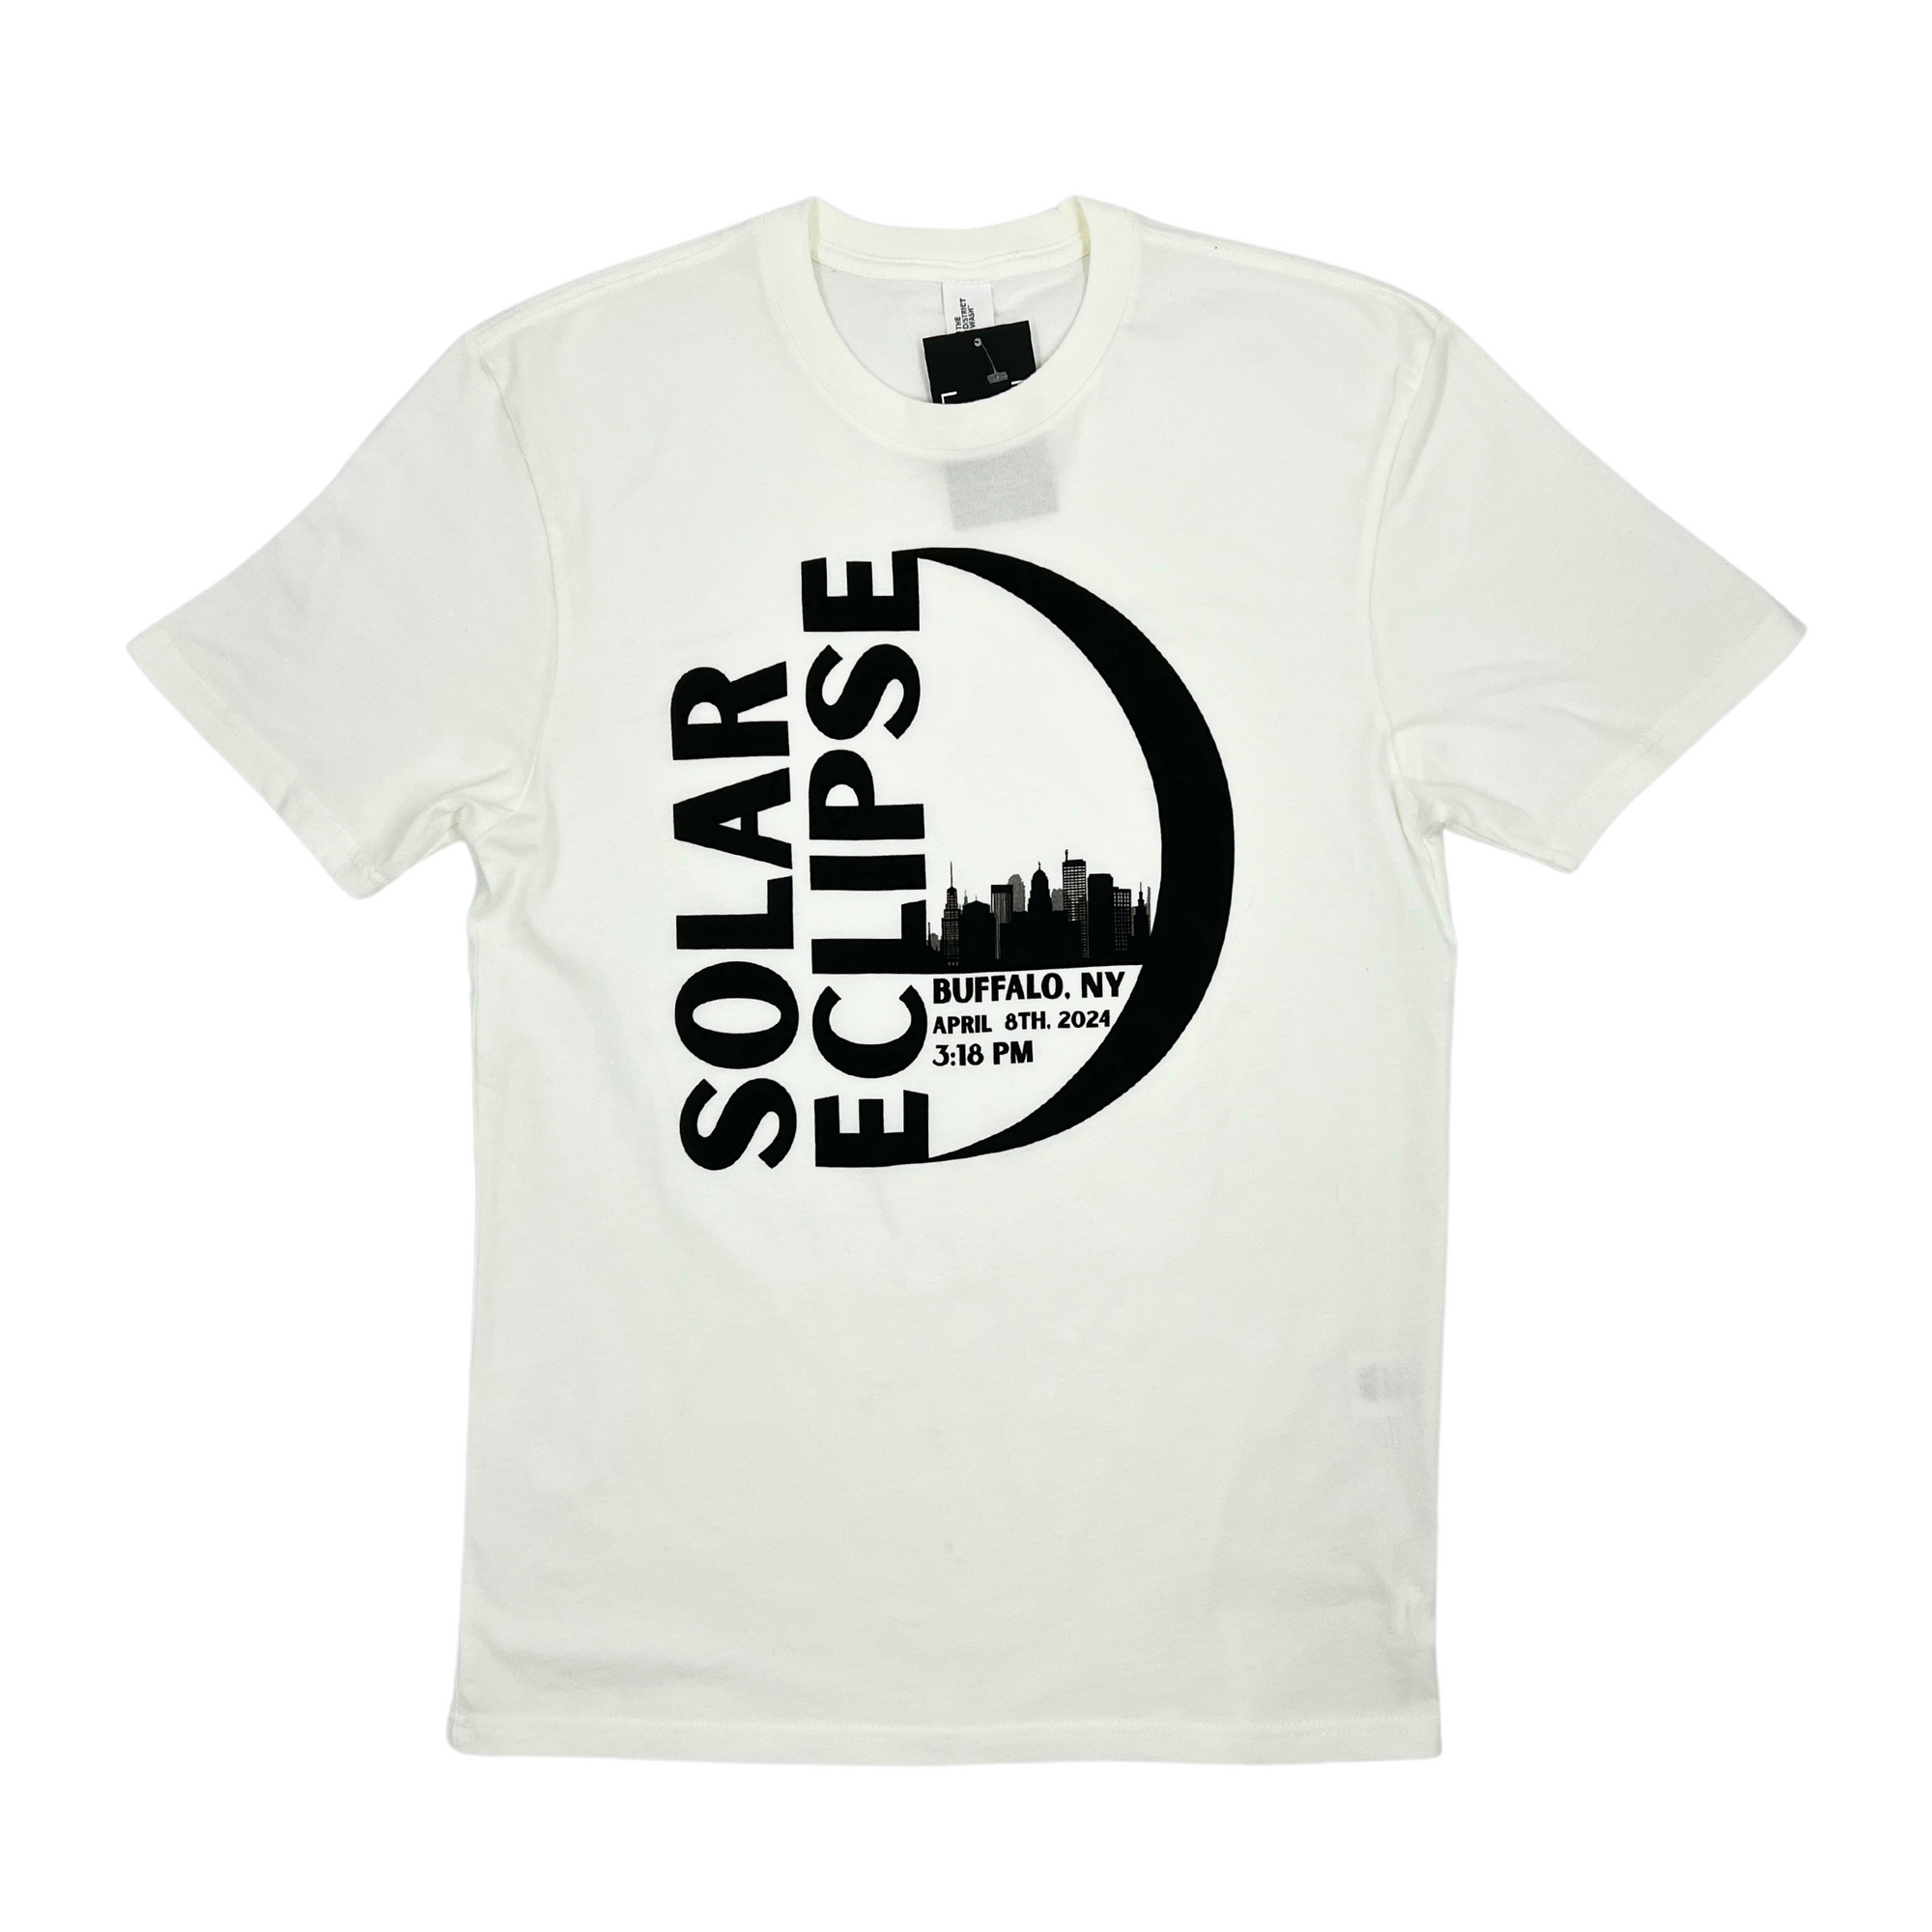 Solar Eclipse Buffalo, NY White Shirt with city skyline